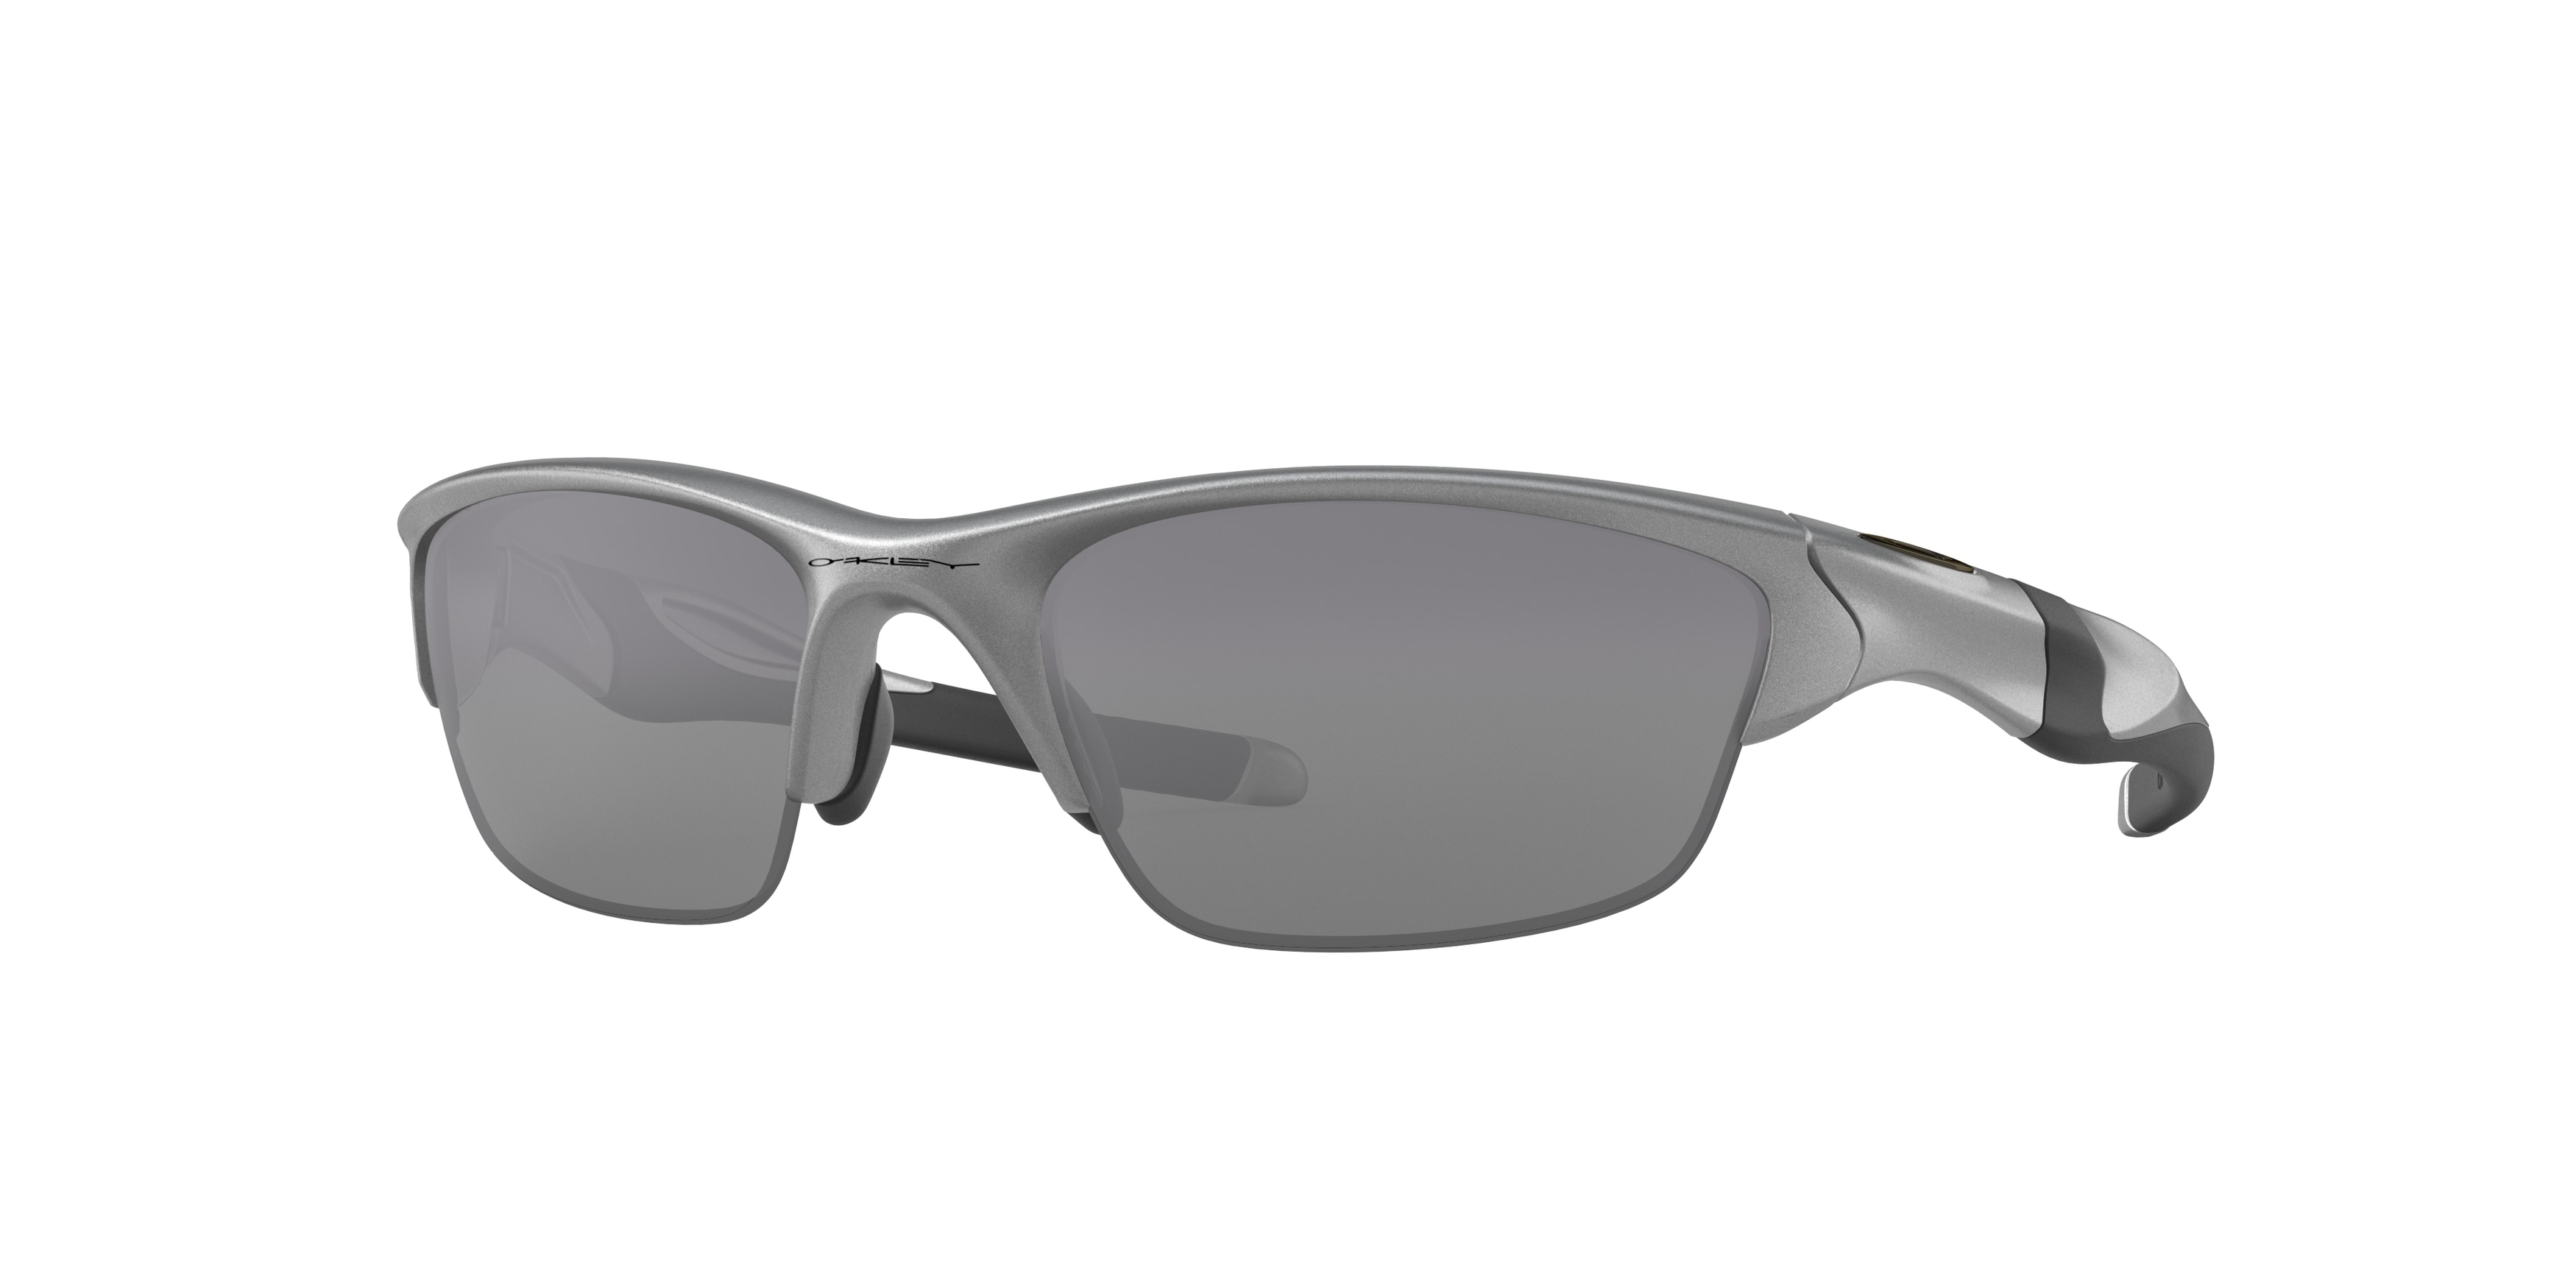 Compatible lenses for Oakley Half jacket 2.0